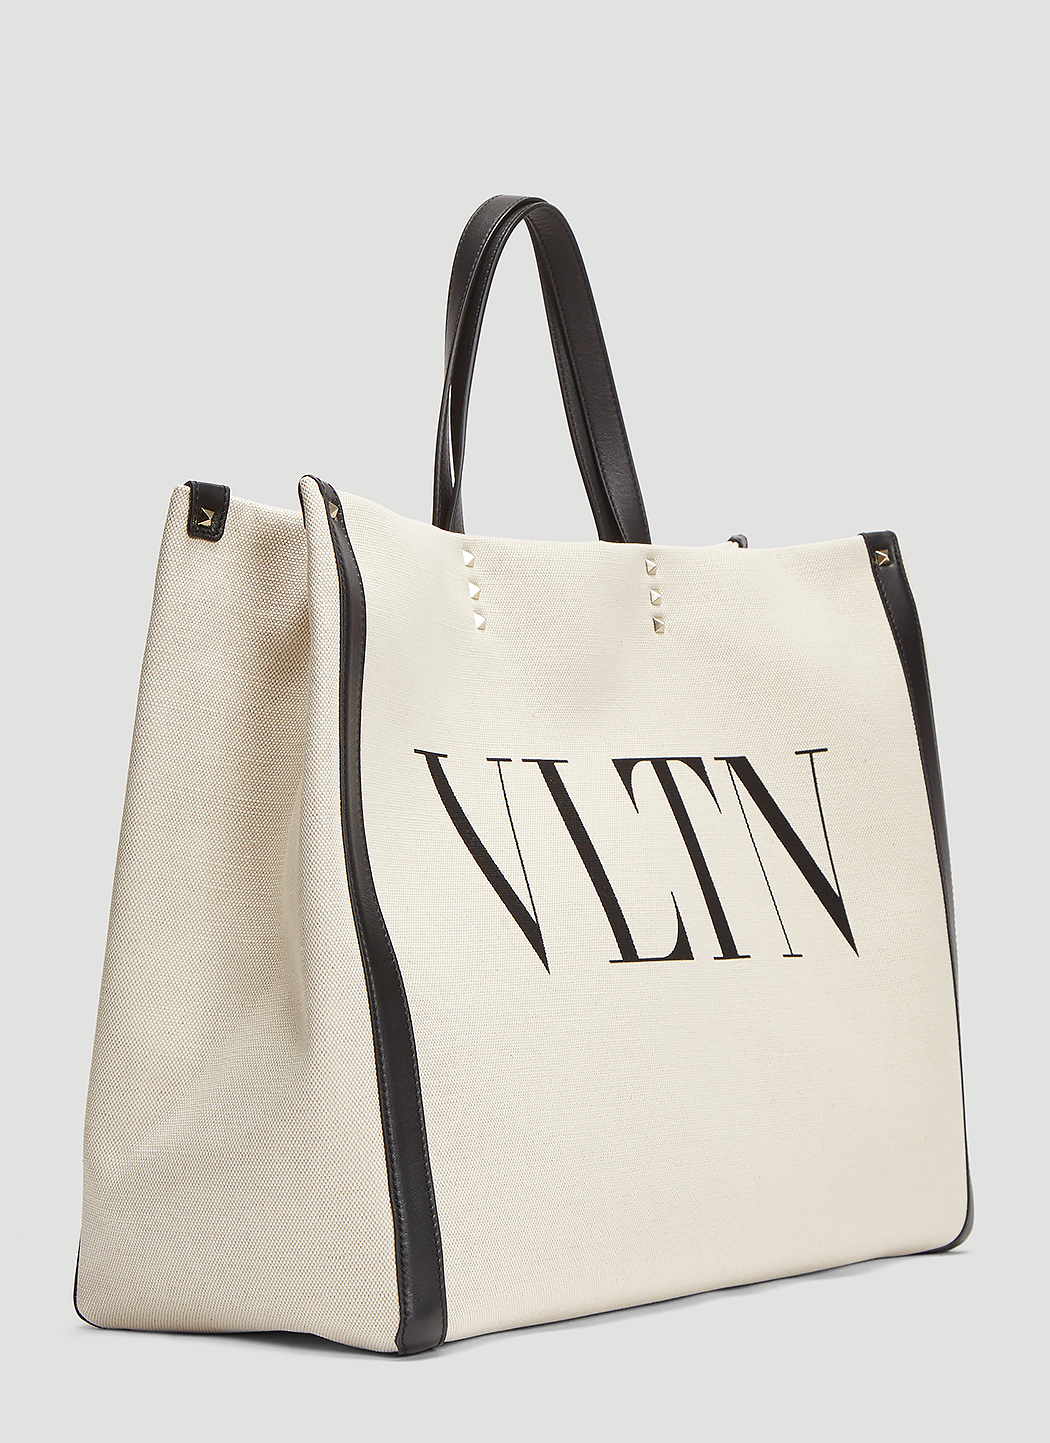 Valentino VLTN Canvas Tote Bag in Cream | LN-CC